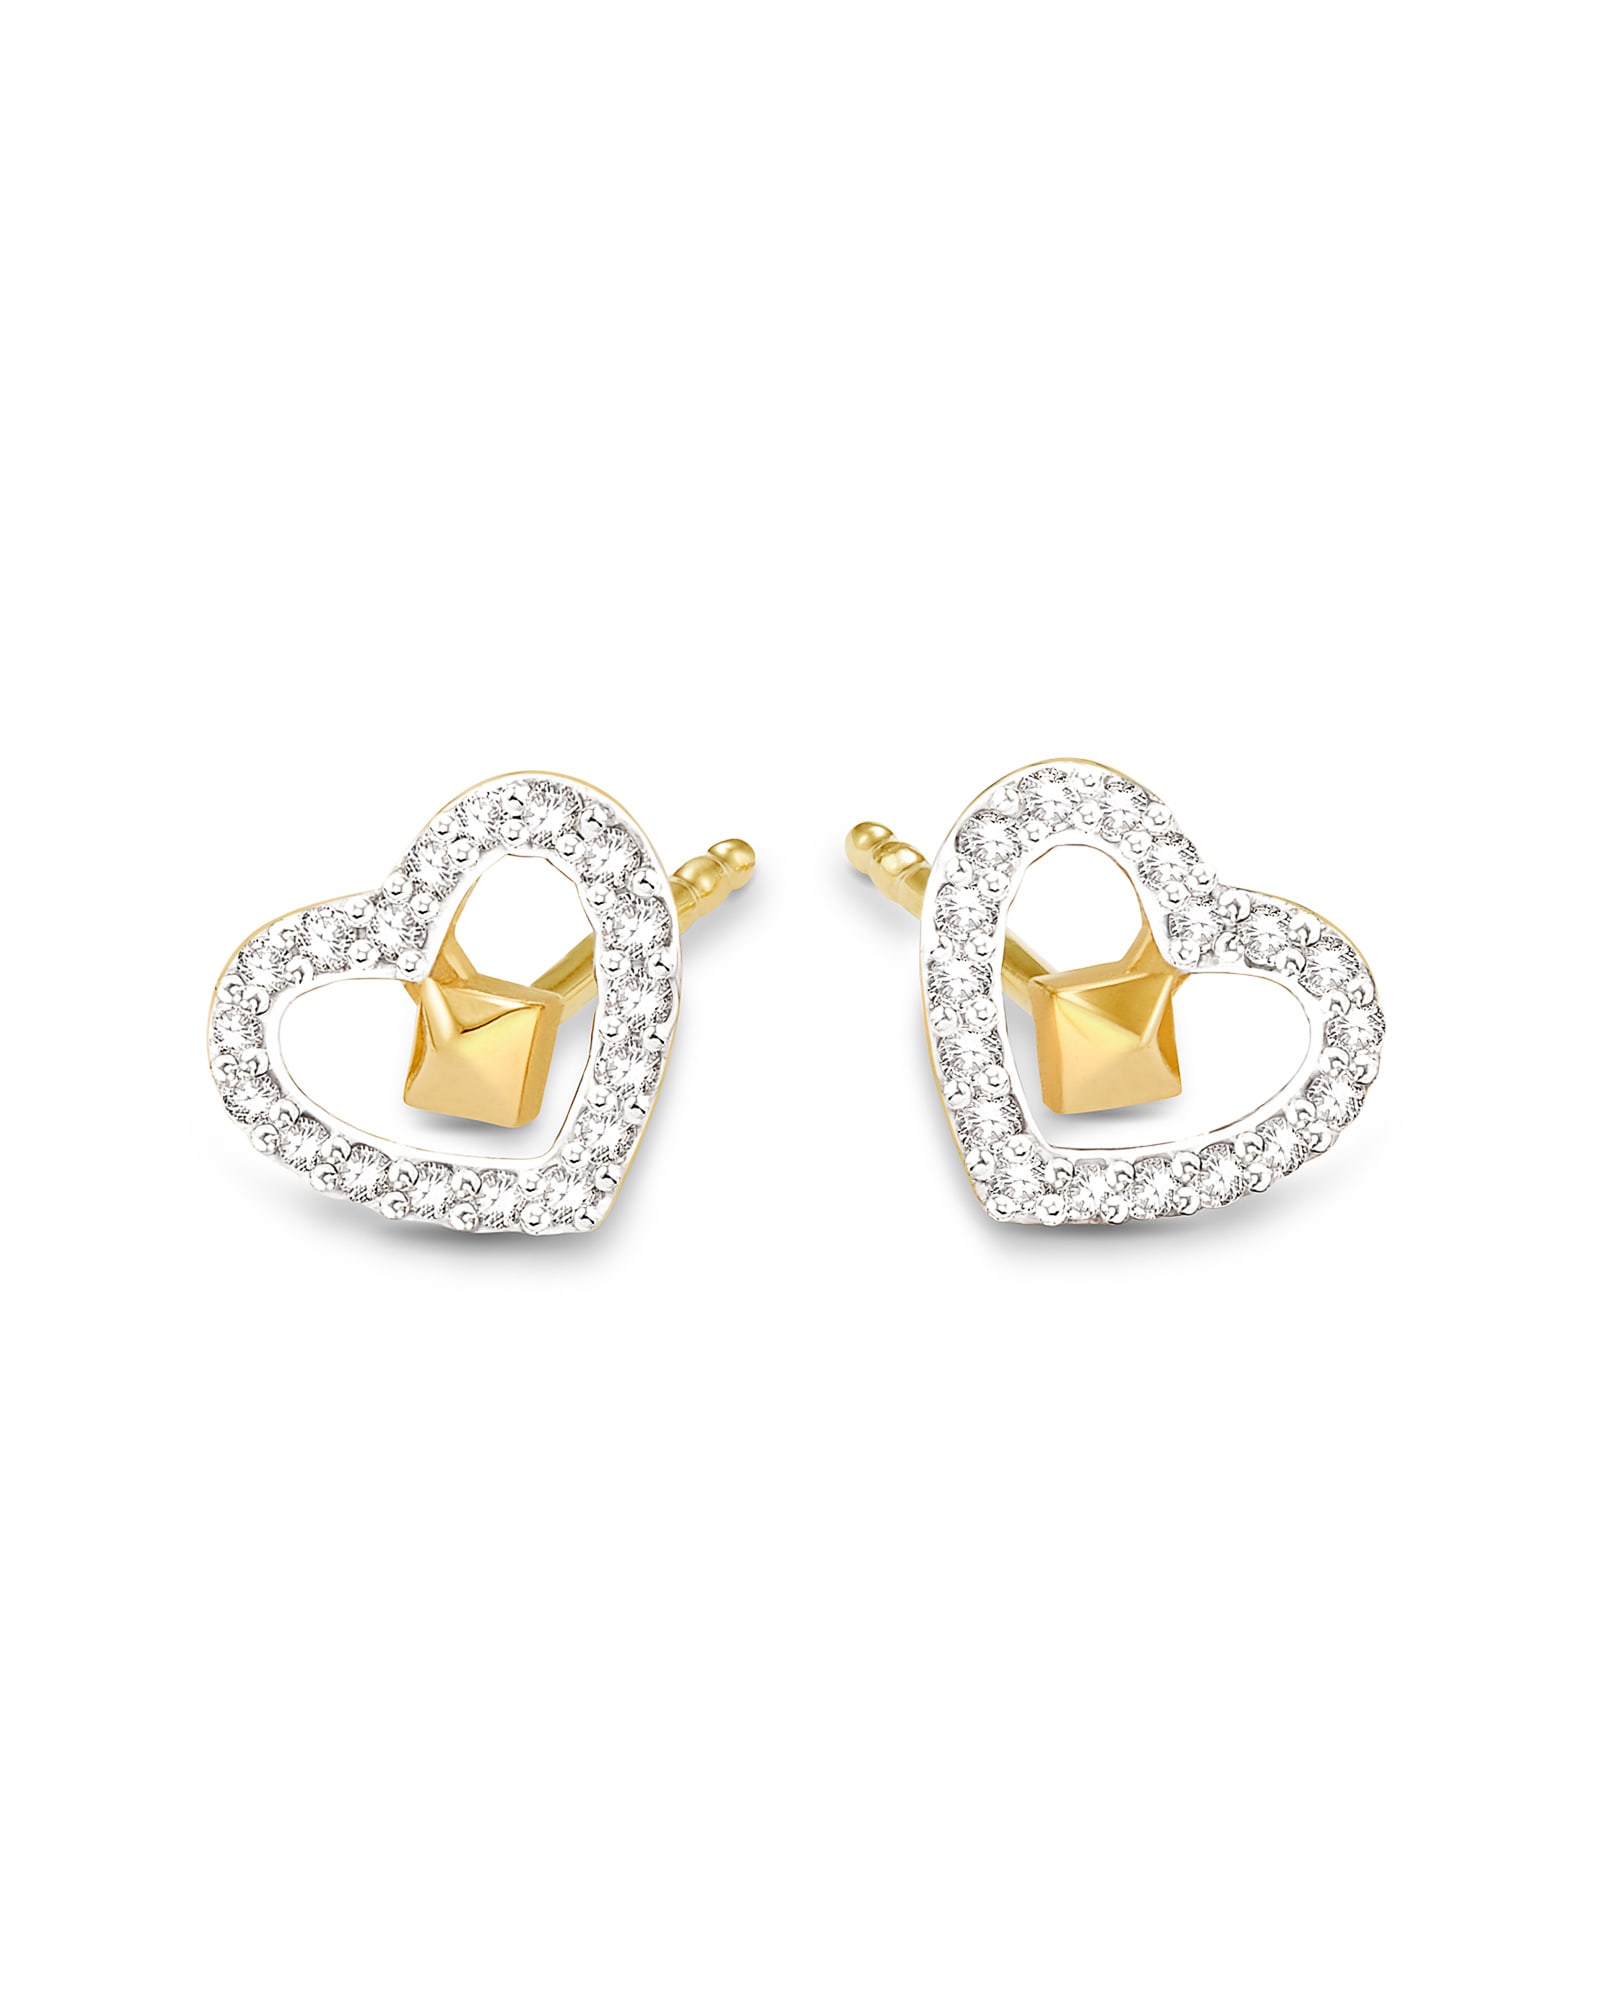 Open Heart 14k Yellow Gold Stud Earrings in White Diamond